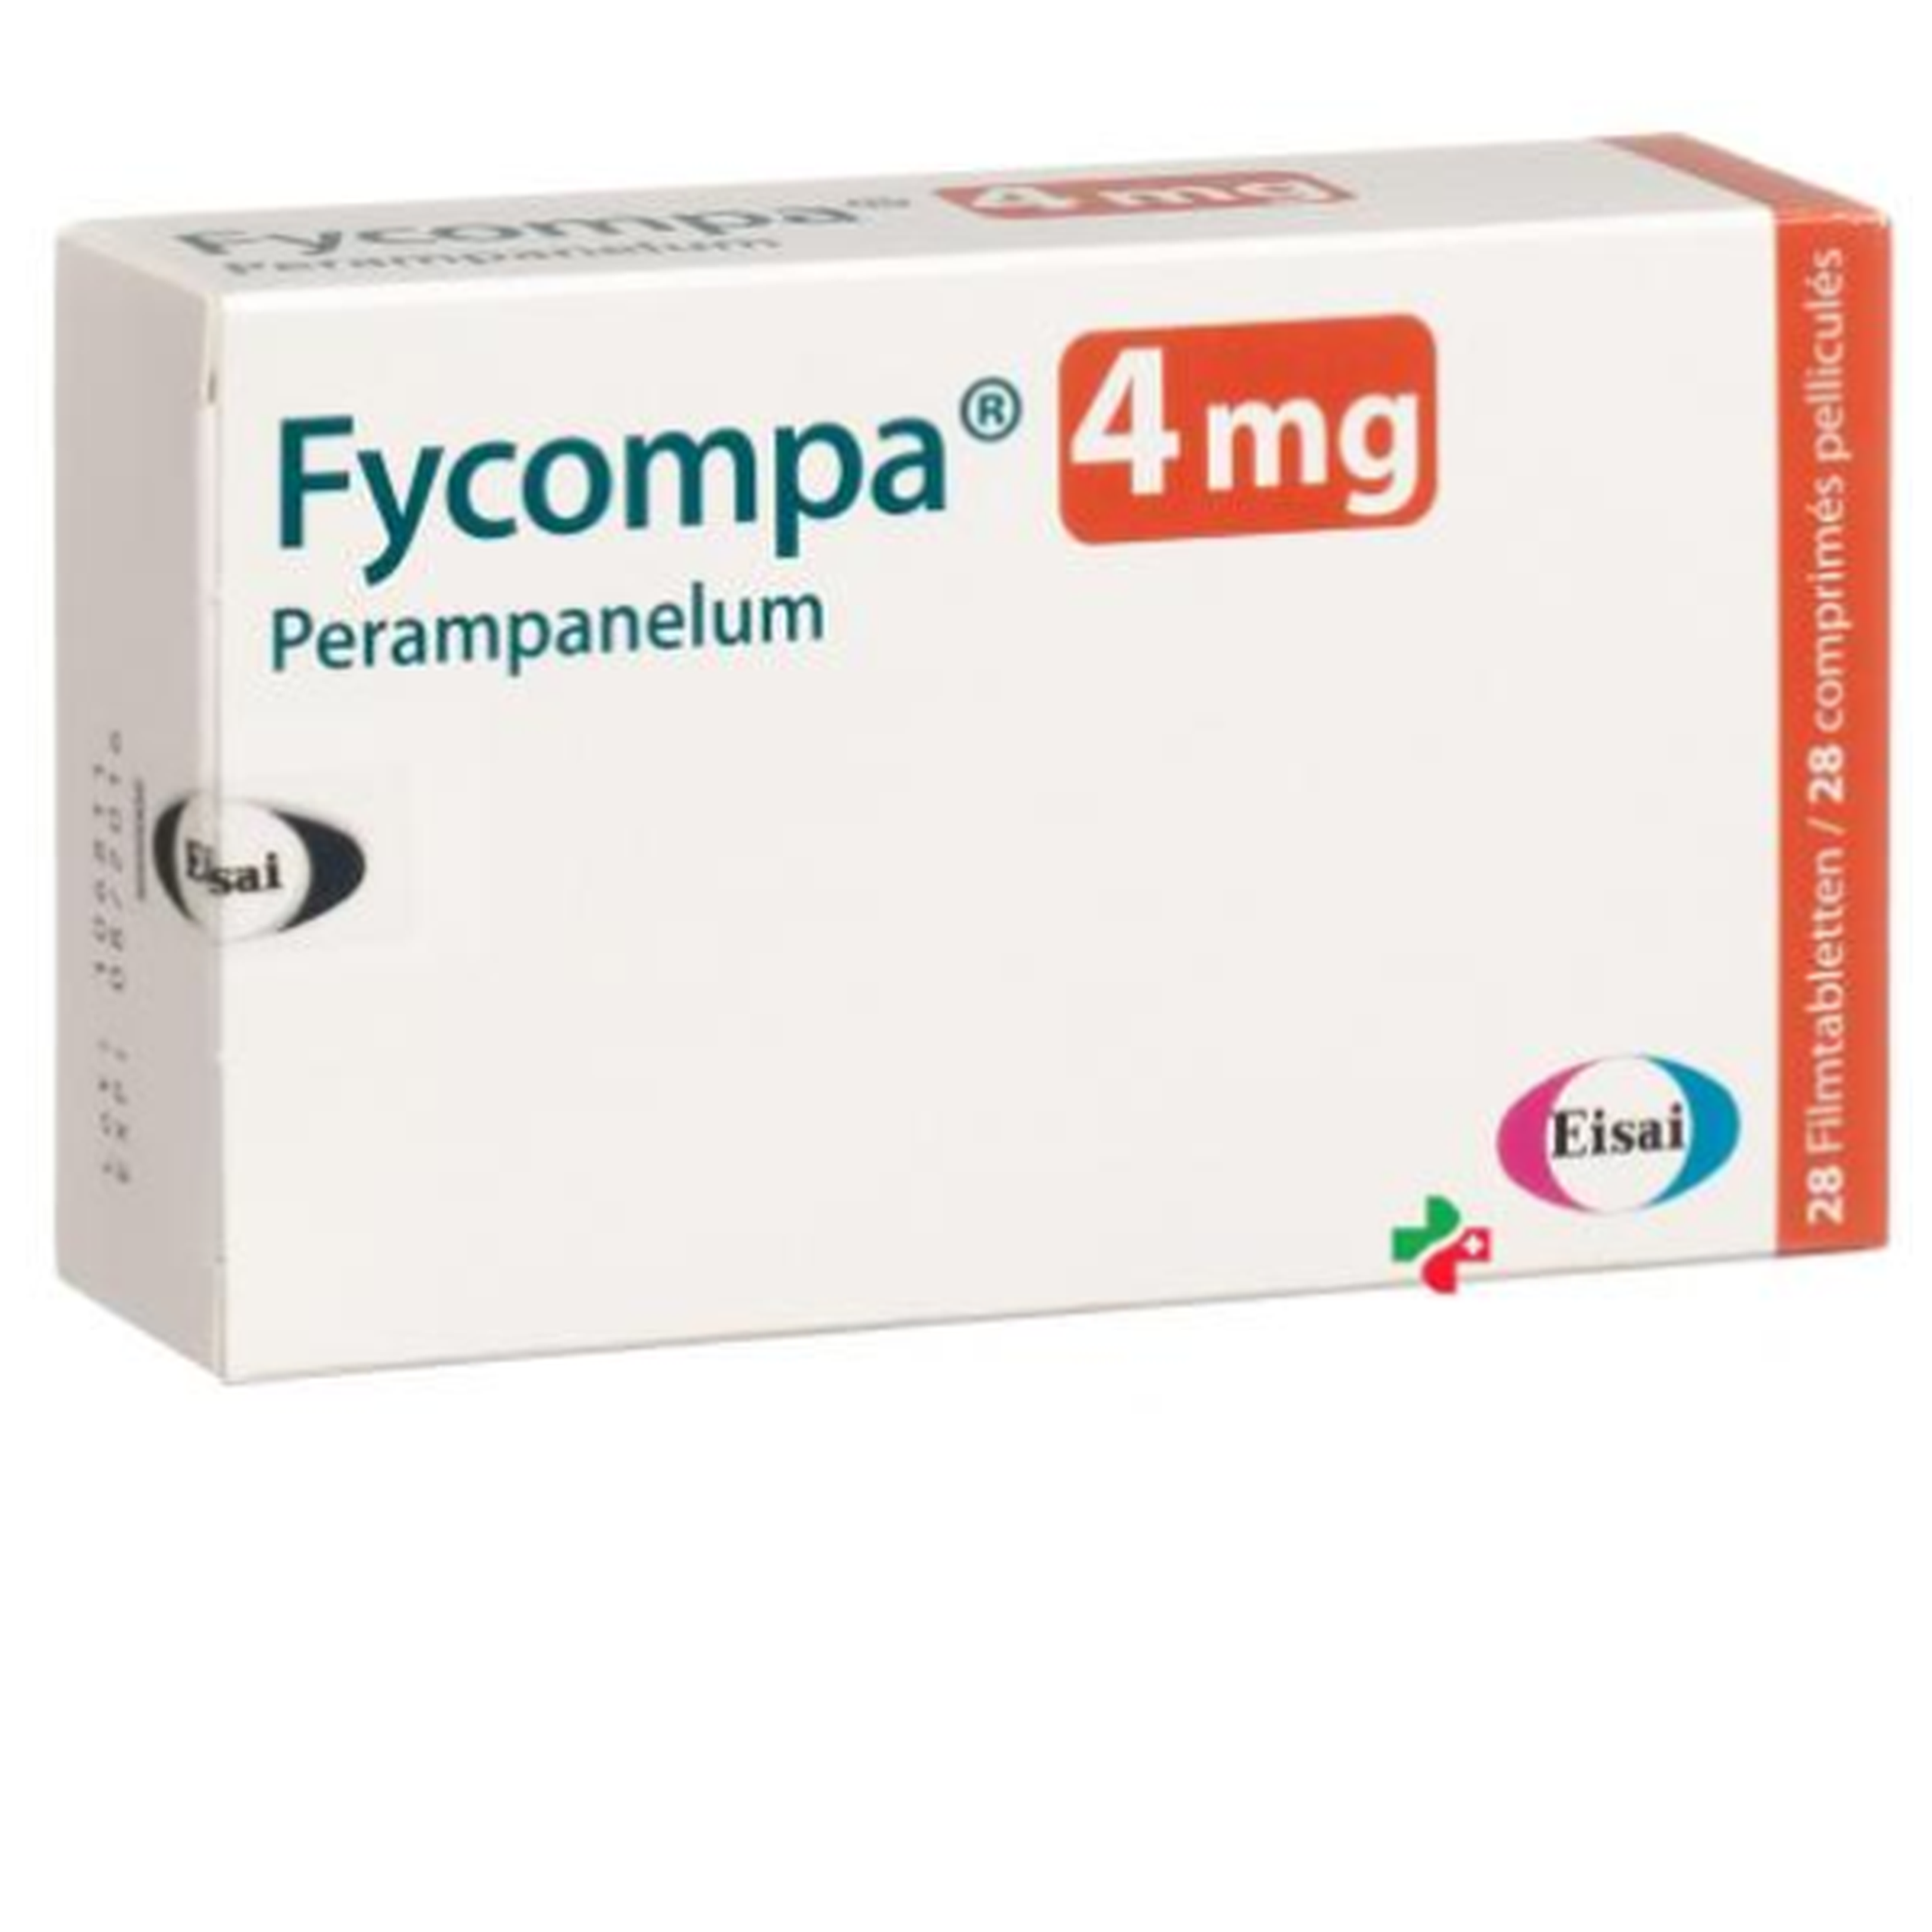 Thuốc Fycompa 4mg Eisai điều trị bổ trợ cơn động kinh  (2 vỉ x 14 viên)